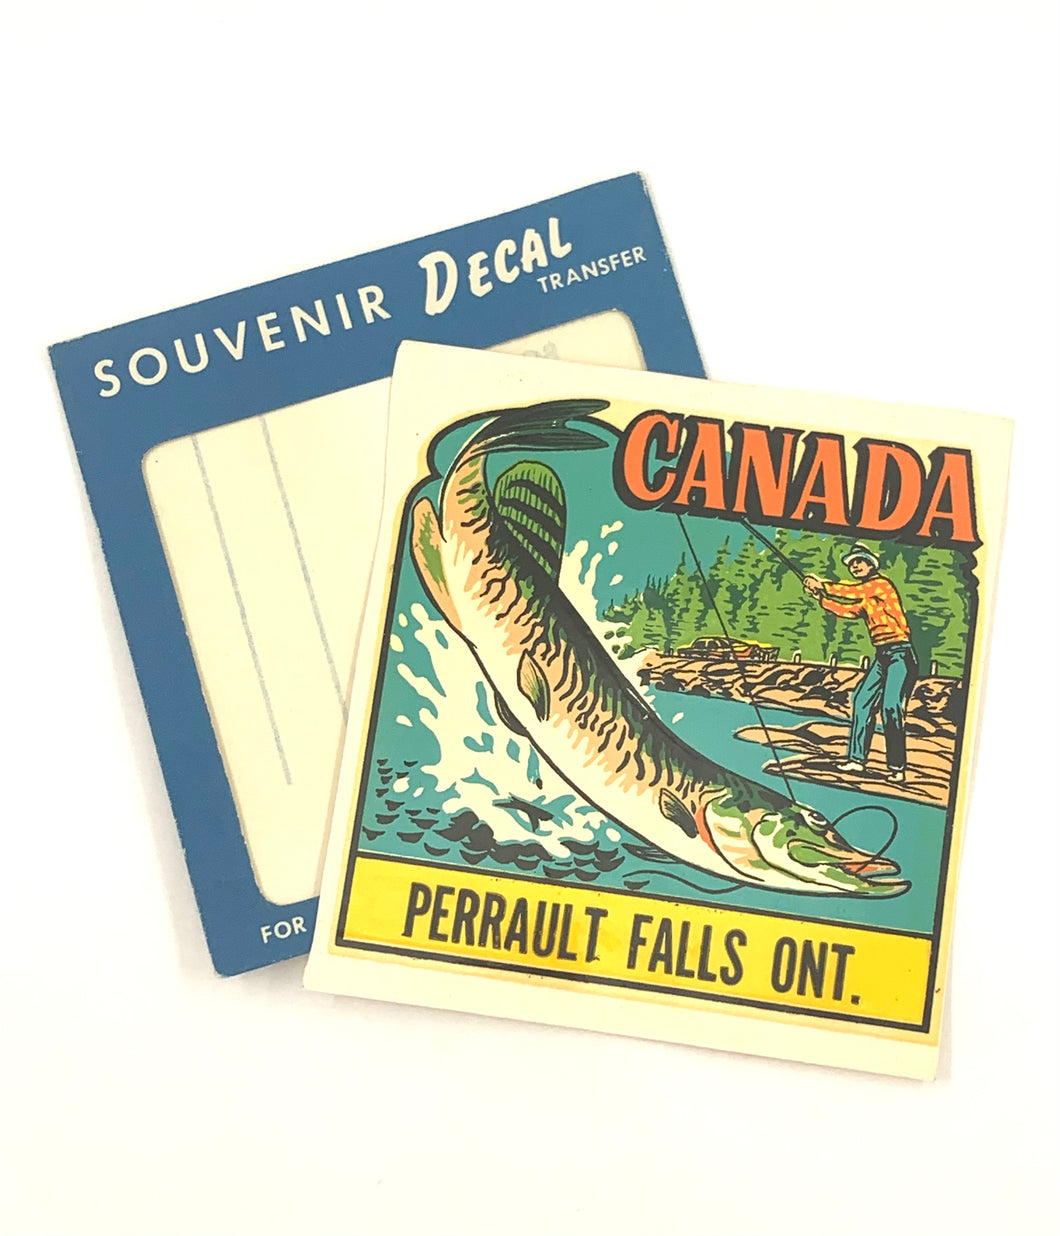 PERRAULT FALLS, ONTARIO, CANADA Vintage Souvenir Decal